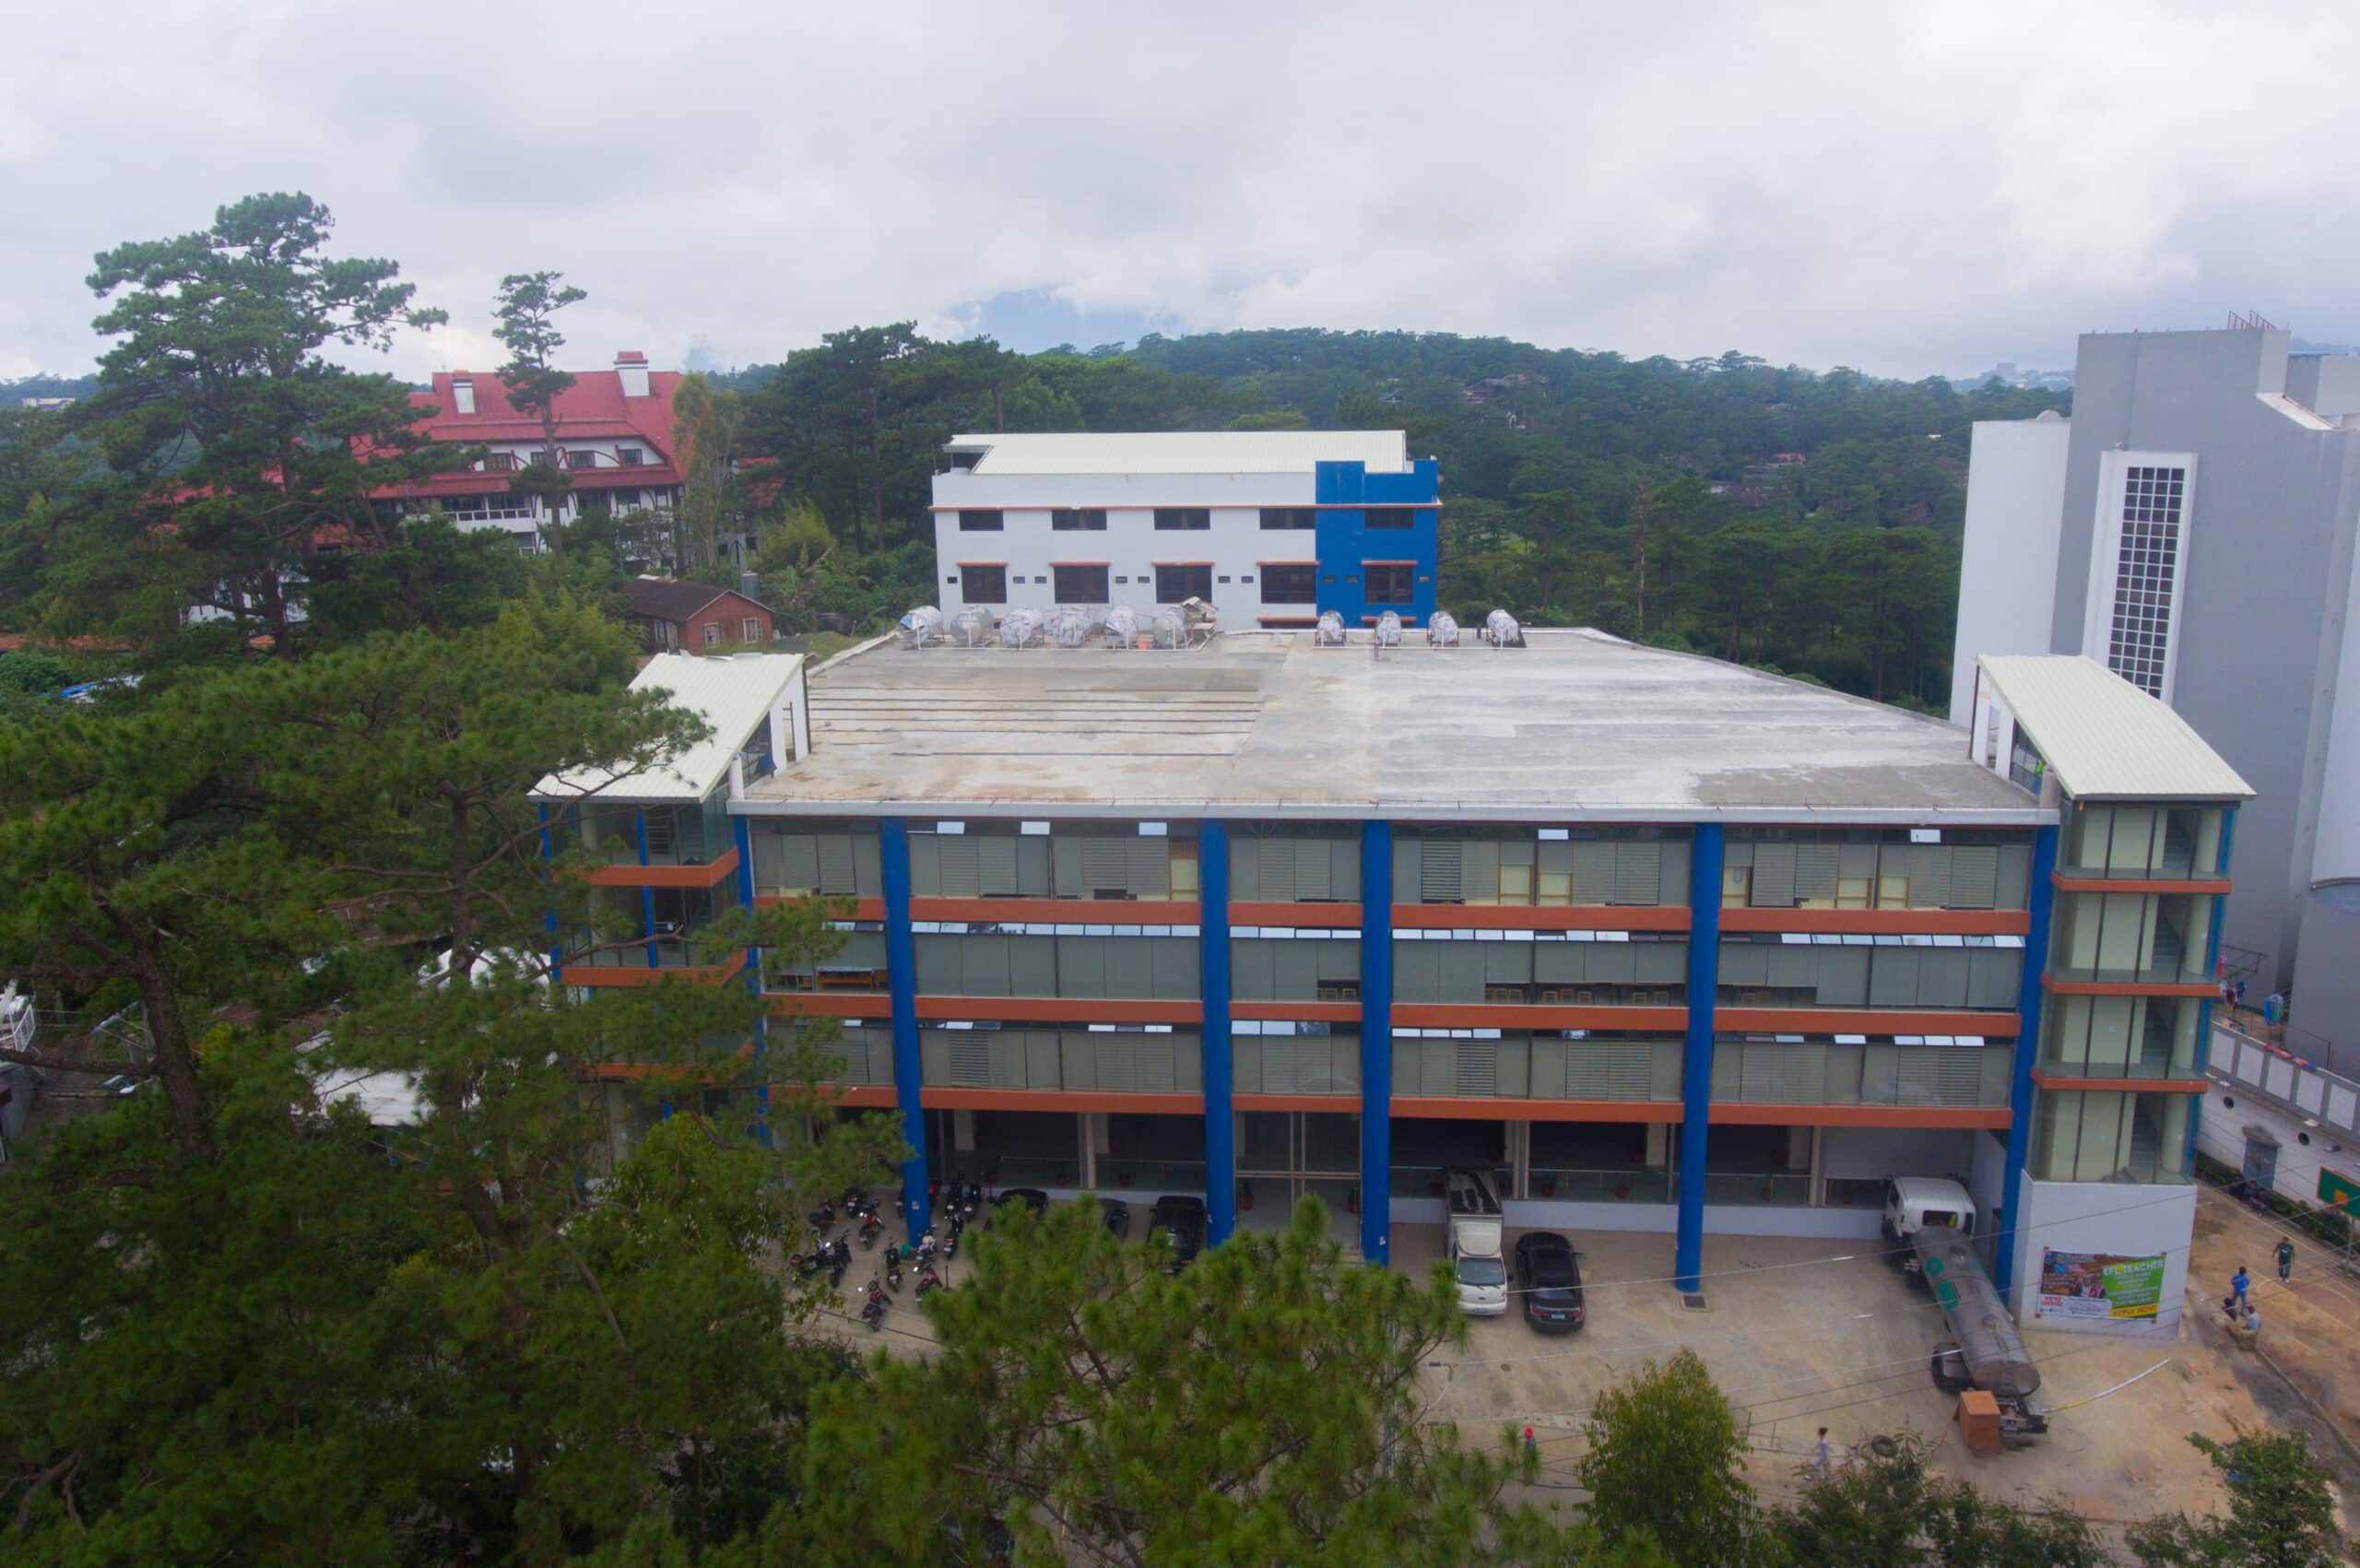 PINES Main Campus